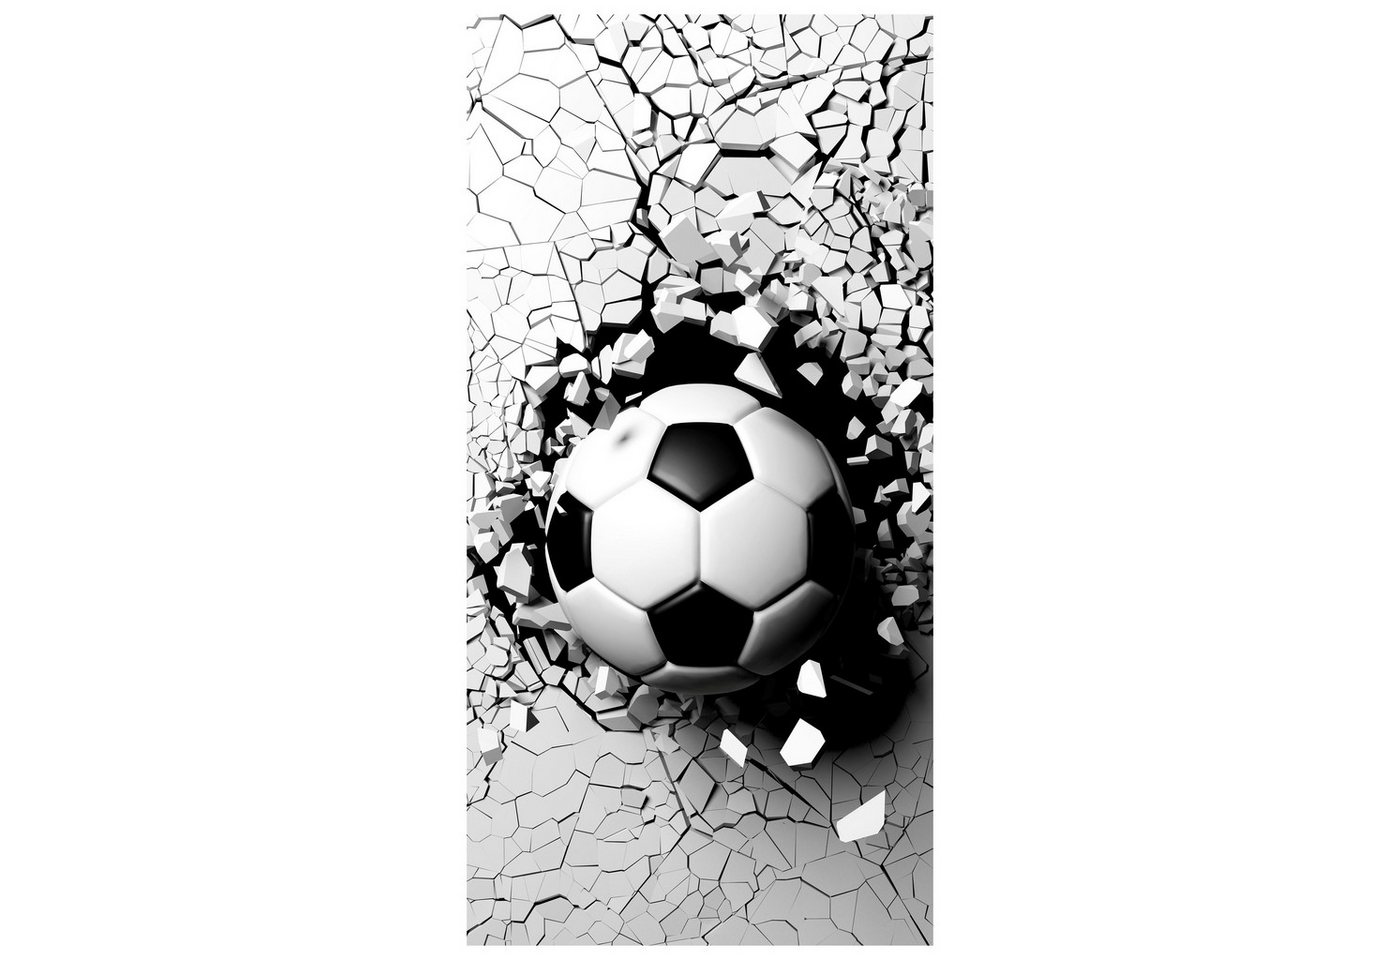 wandmotiv24 Türtapete Fussball durch Wand, 3D, Sport, Ball, glatt, Fototapete, Wandtapete, Motivtapete, matt, selbstklebende Dekorfolie von wandmotiv24